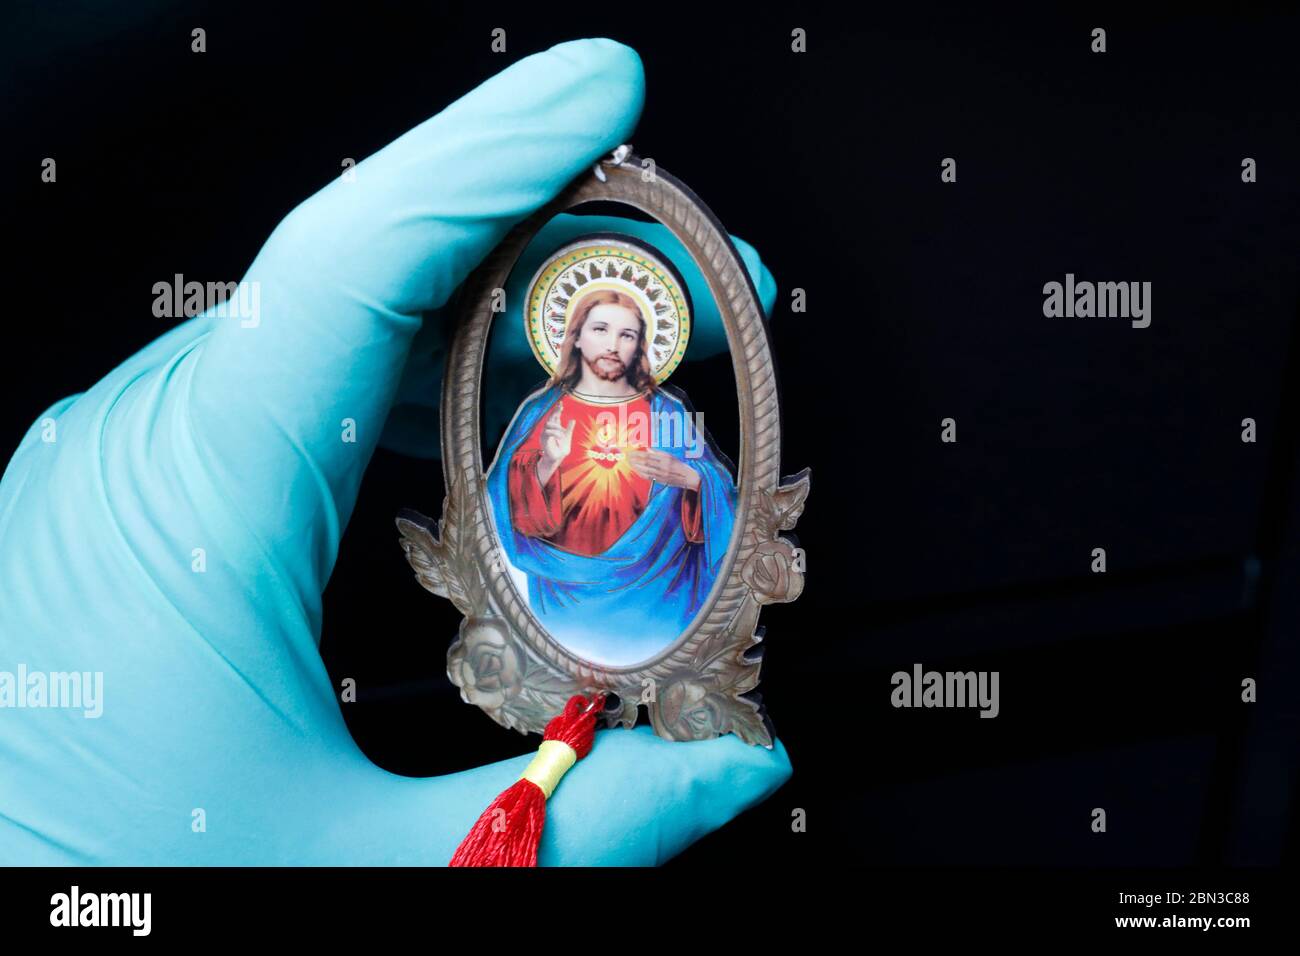 Épidémies de coronavirus ( Covid-19 ). catholique priant le rosaire avec un gant protecteur. Banque D'Images